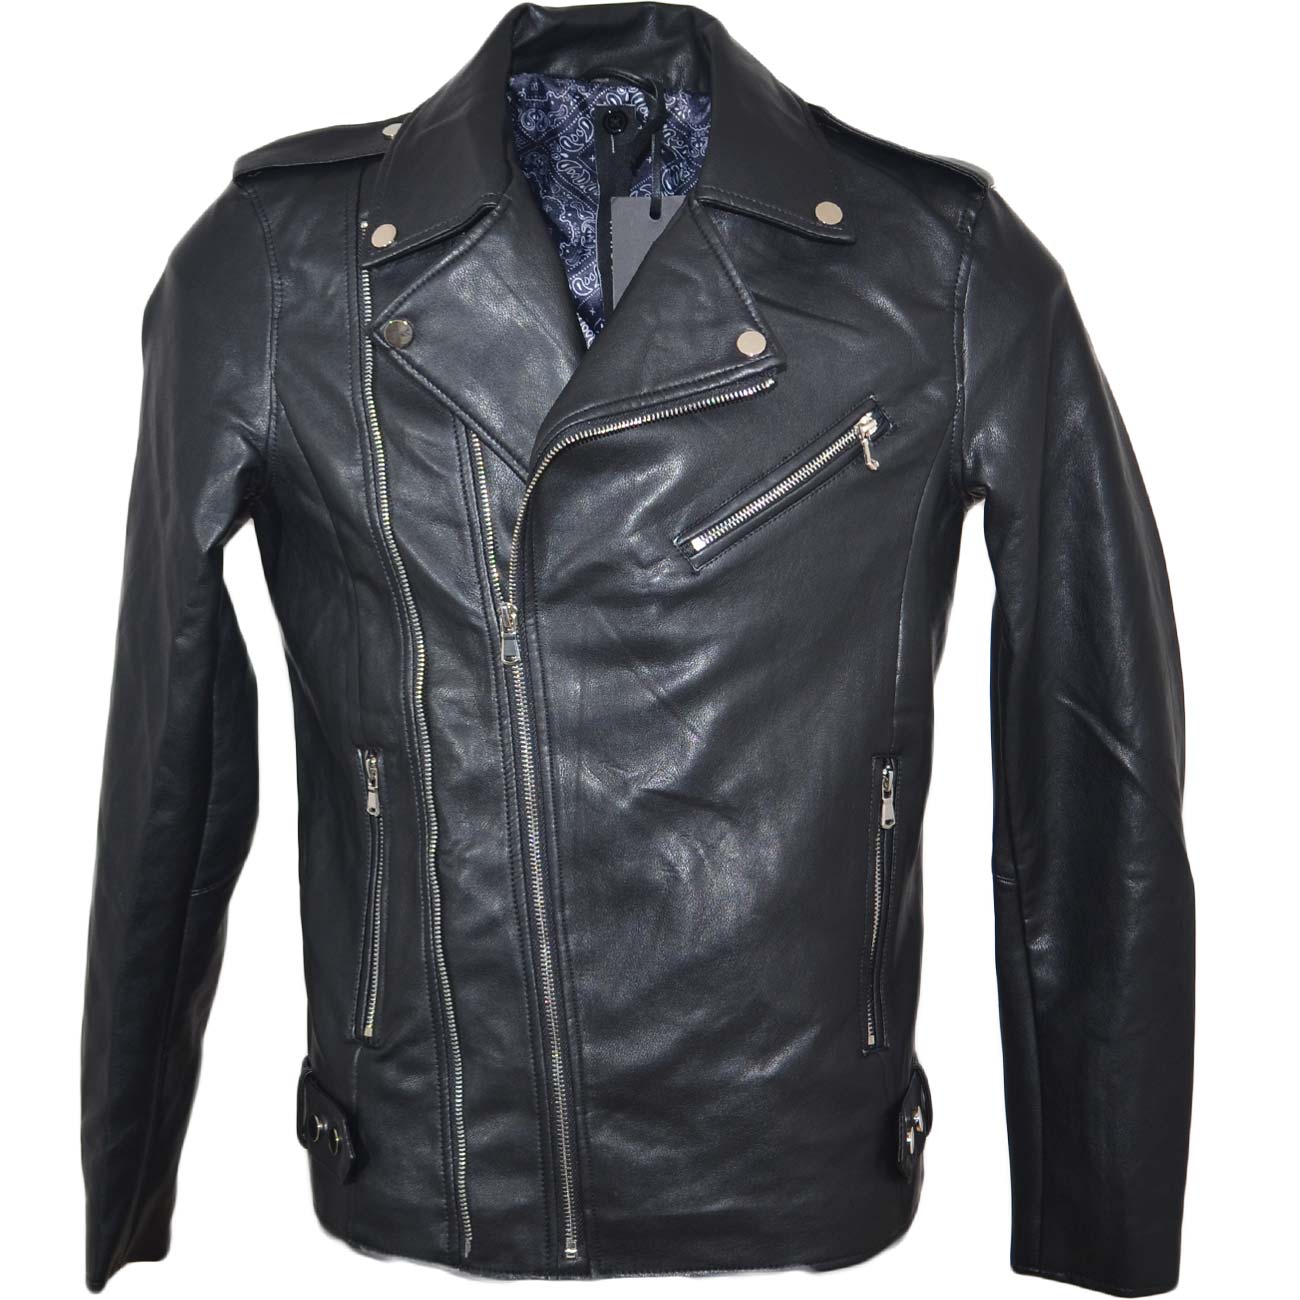 Chiodo giacca uomo di pelle ecologica nero con ganci argento vestibilita' slim moda basic trend